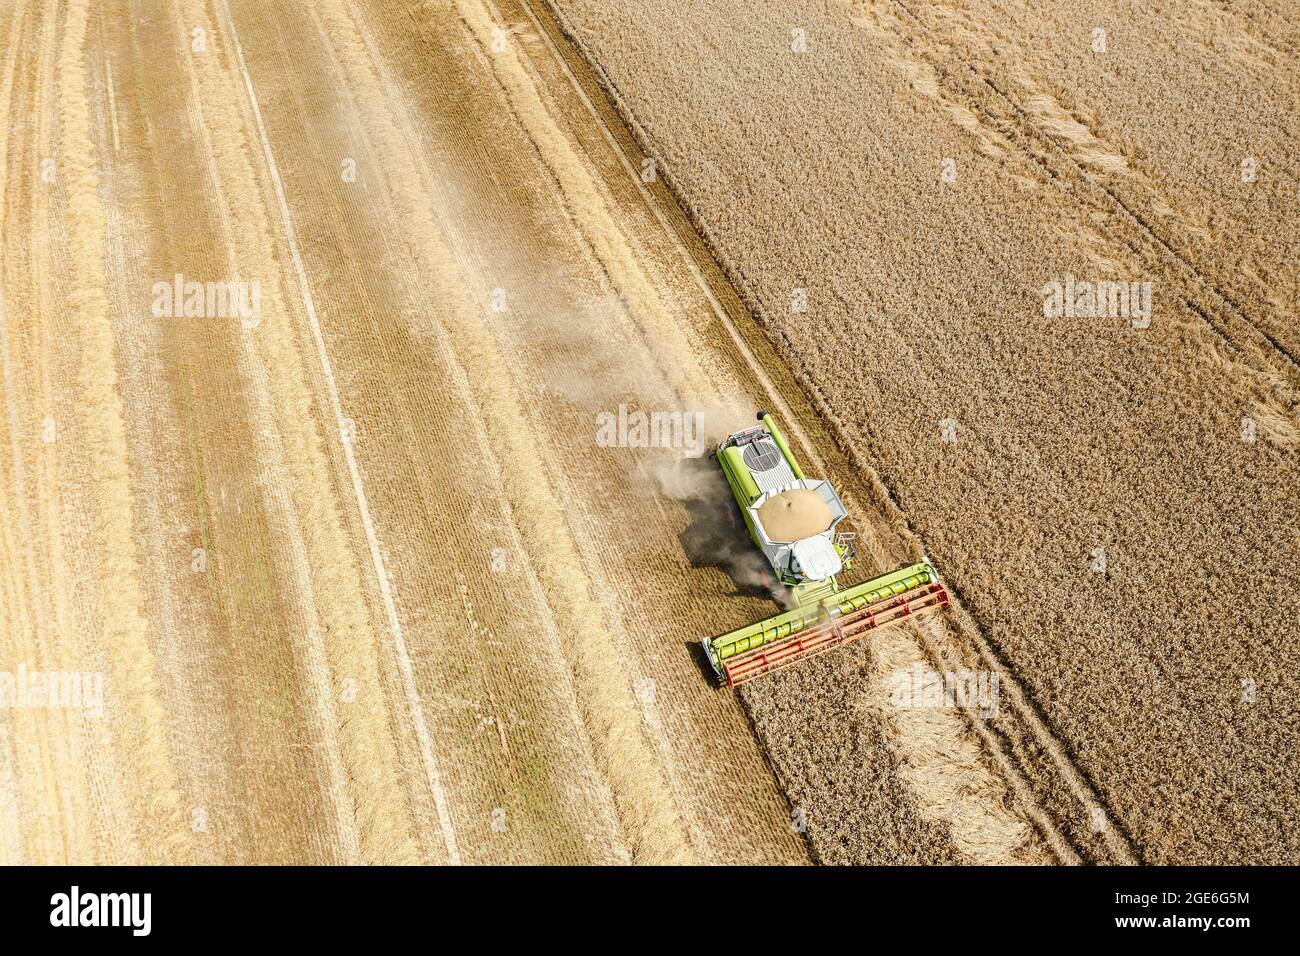 mietitrebbia che raccoglie il terreno di grano maturo dorato nelle giornate estive più luminose. vista aerea del lavoro di mietitura. Foto Stock